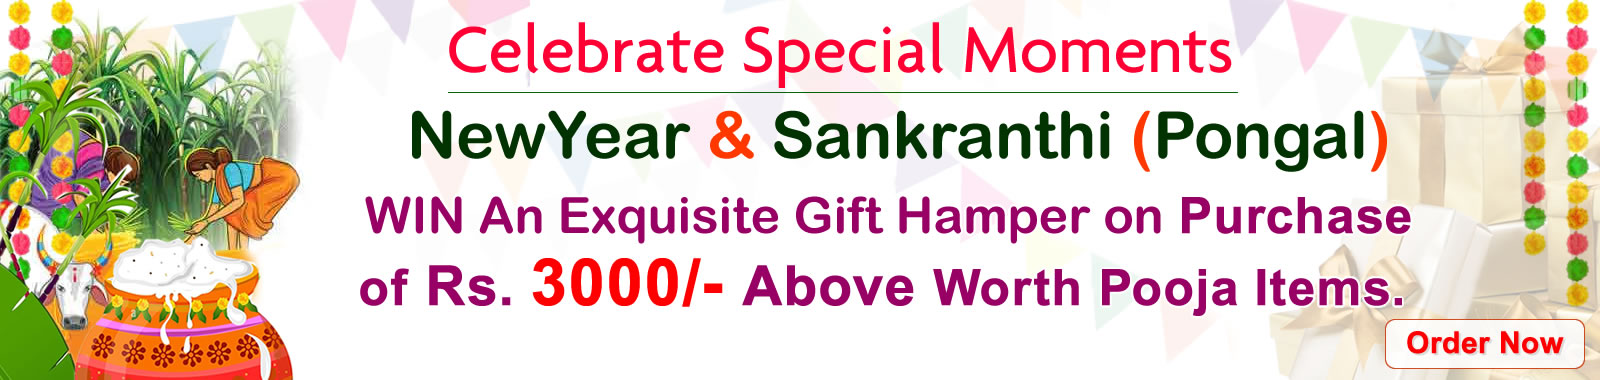 sankranthi offers price 